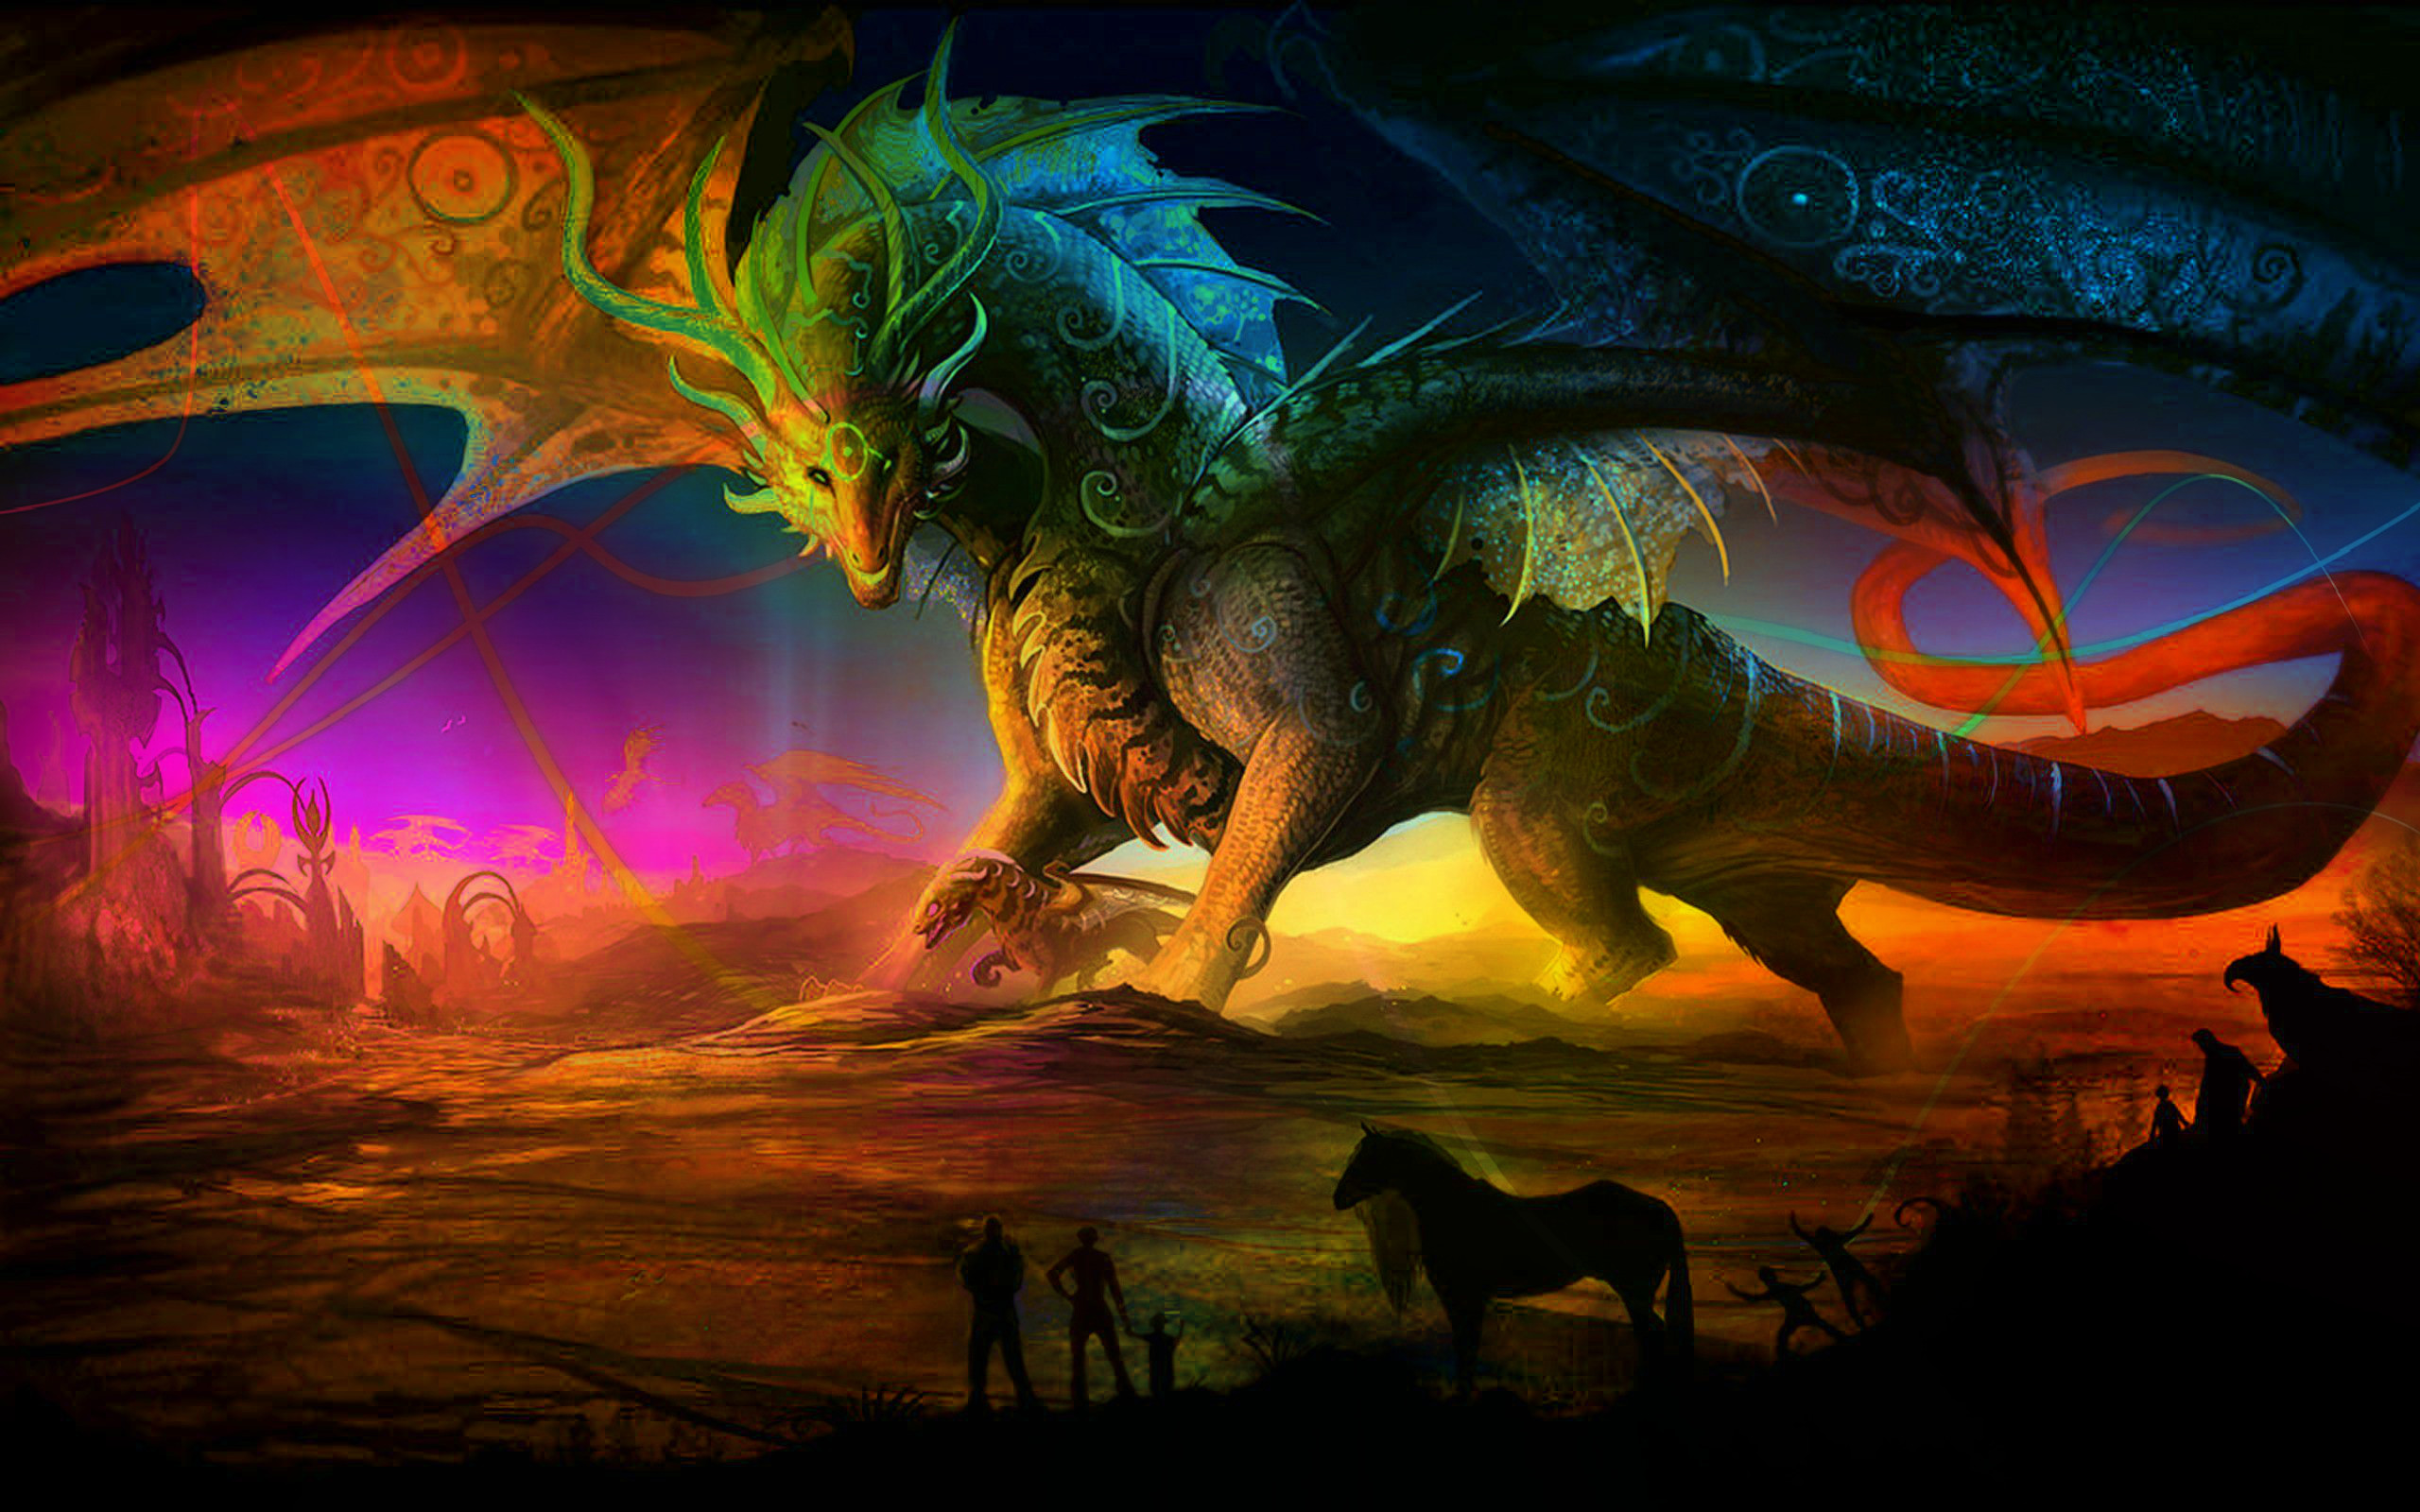 ドラゴンのデスクトップの壁紙,ドラゴン,架空の人物,cgアートワーク,恐竜,神話上の生き物